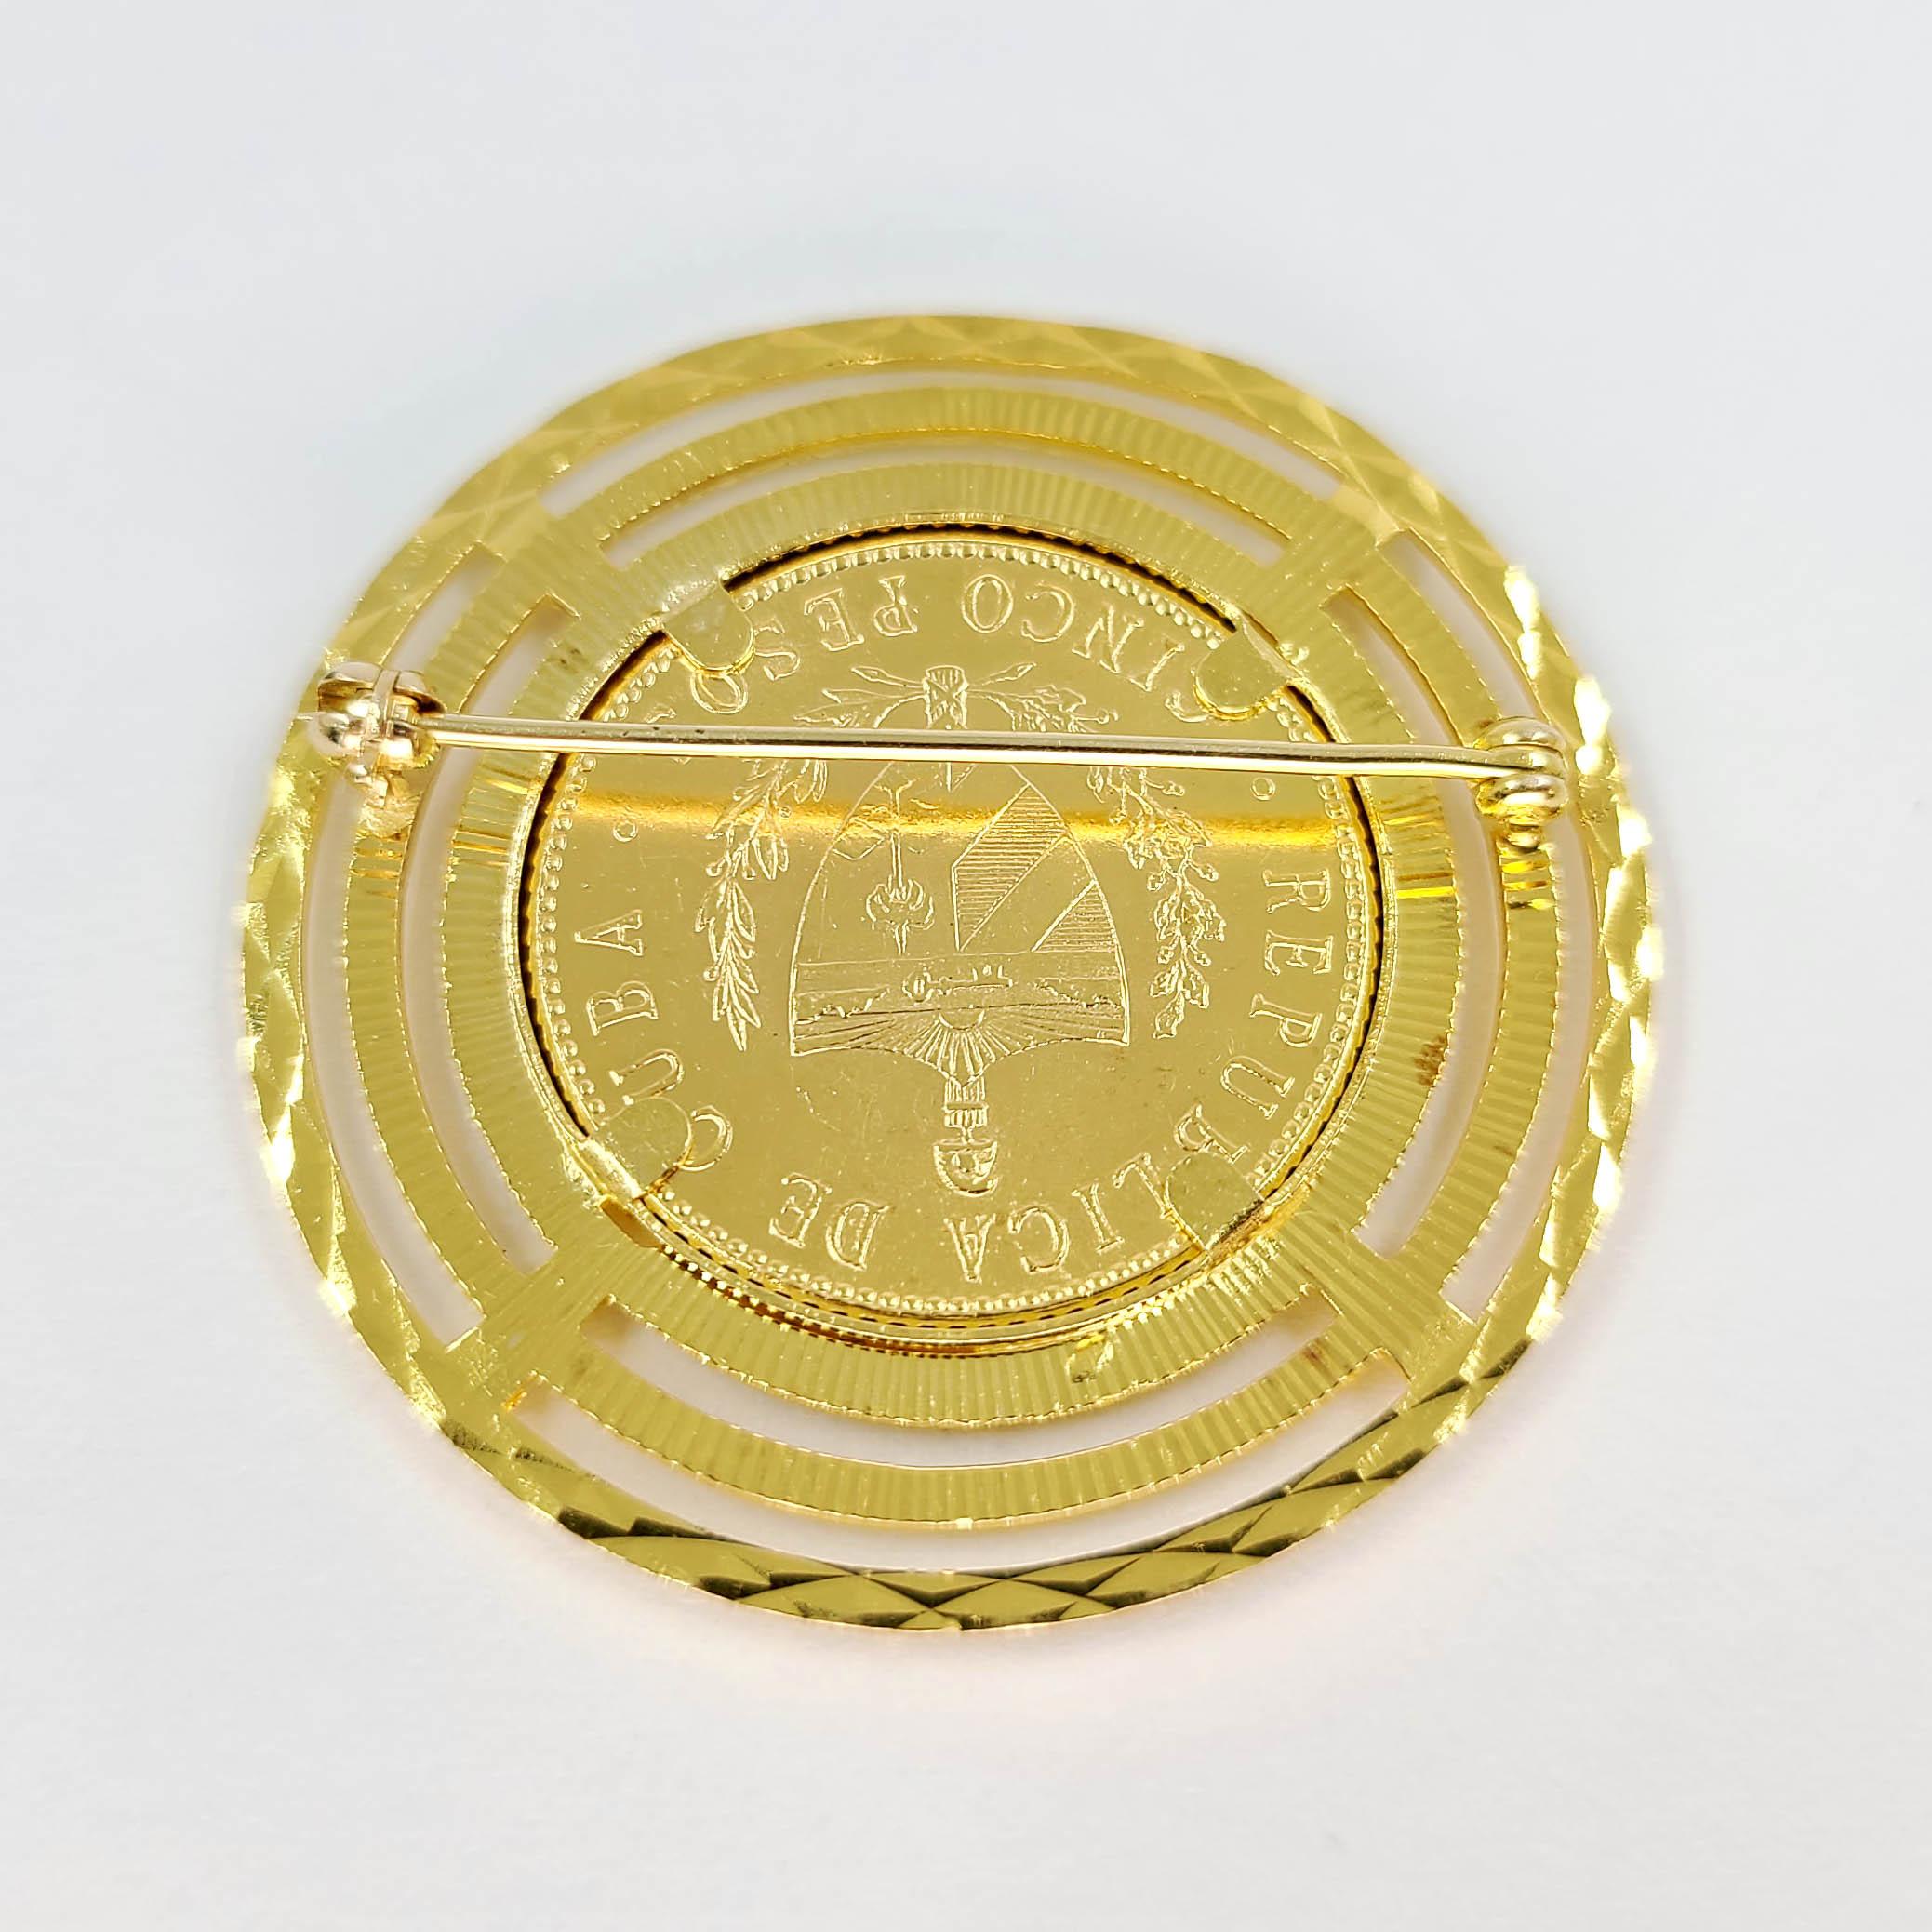 18 Karat Gelbgold Rahmen & Pin rund um eine 22 Karat Gelbgold kubanische Cinco Pesos Münze von 1916. Das fertige Gewicht beträgt 15,0 Gramm.